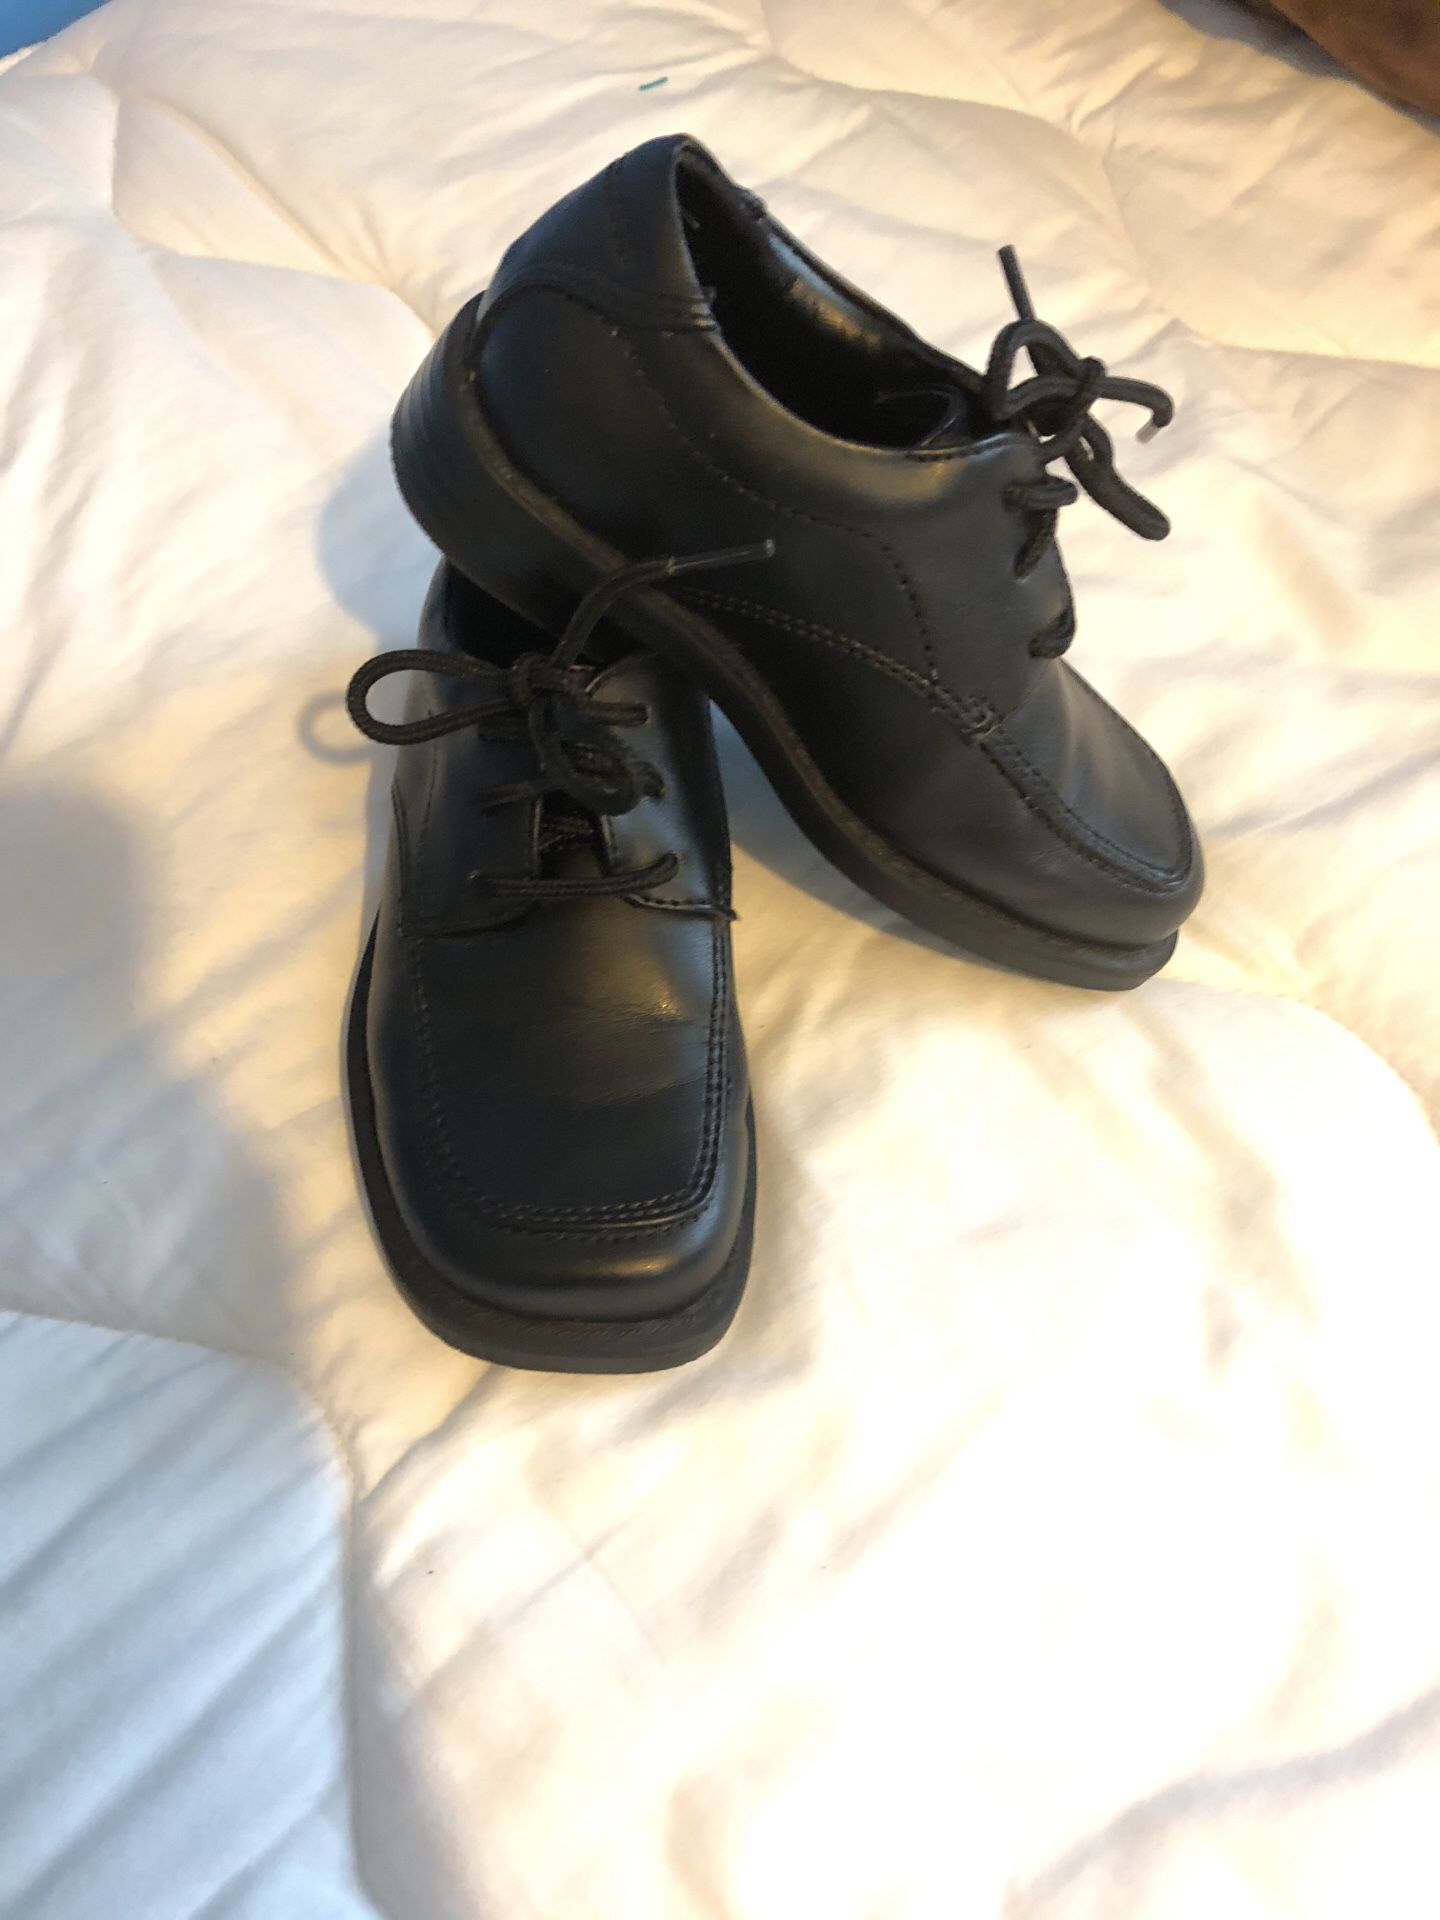 Boys shoes size 6 black